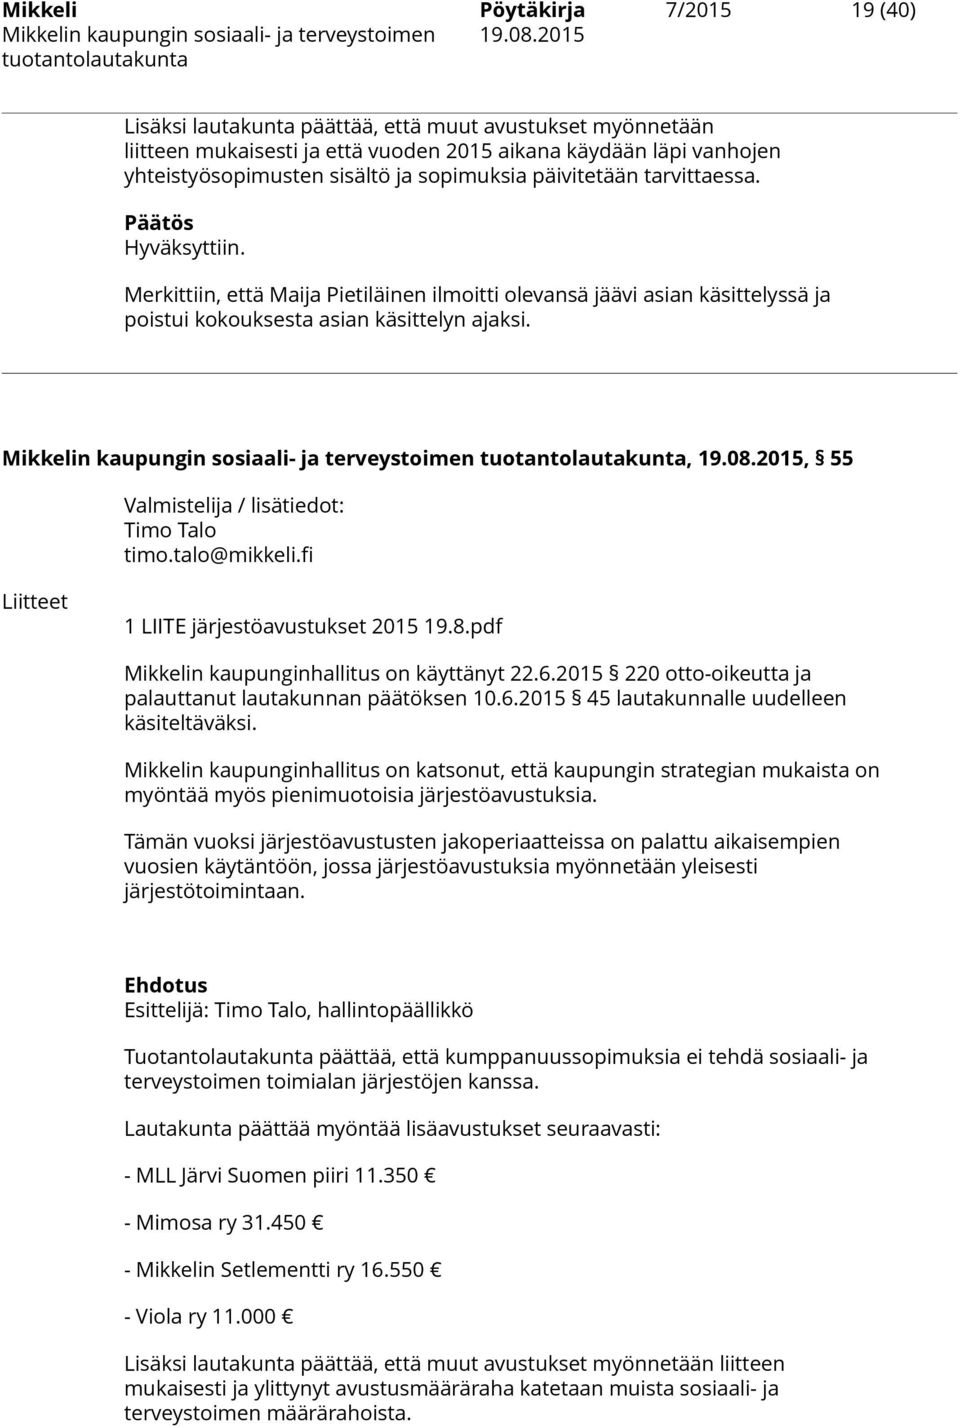 Mikkelin kaupungin sosiaali- ja terveystoimen, 19.08.2015, 55 Valmistelija / lisätiedot: Timo Talo timo.talo@mikkeli.fi Liitteet 1 LIITE järjestöavustukset 2015 19.8.pdf Mikkelin kaupunginhallitus on käyttänyt 22.